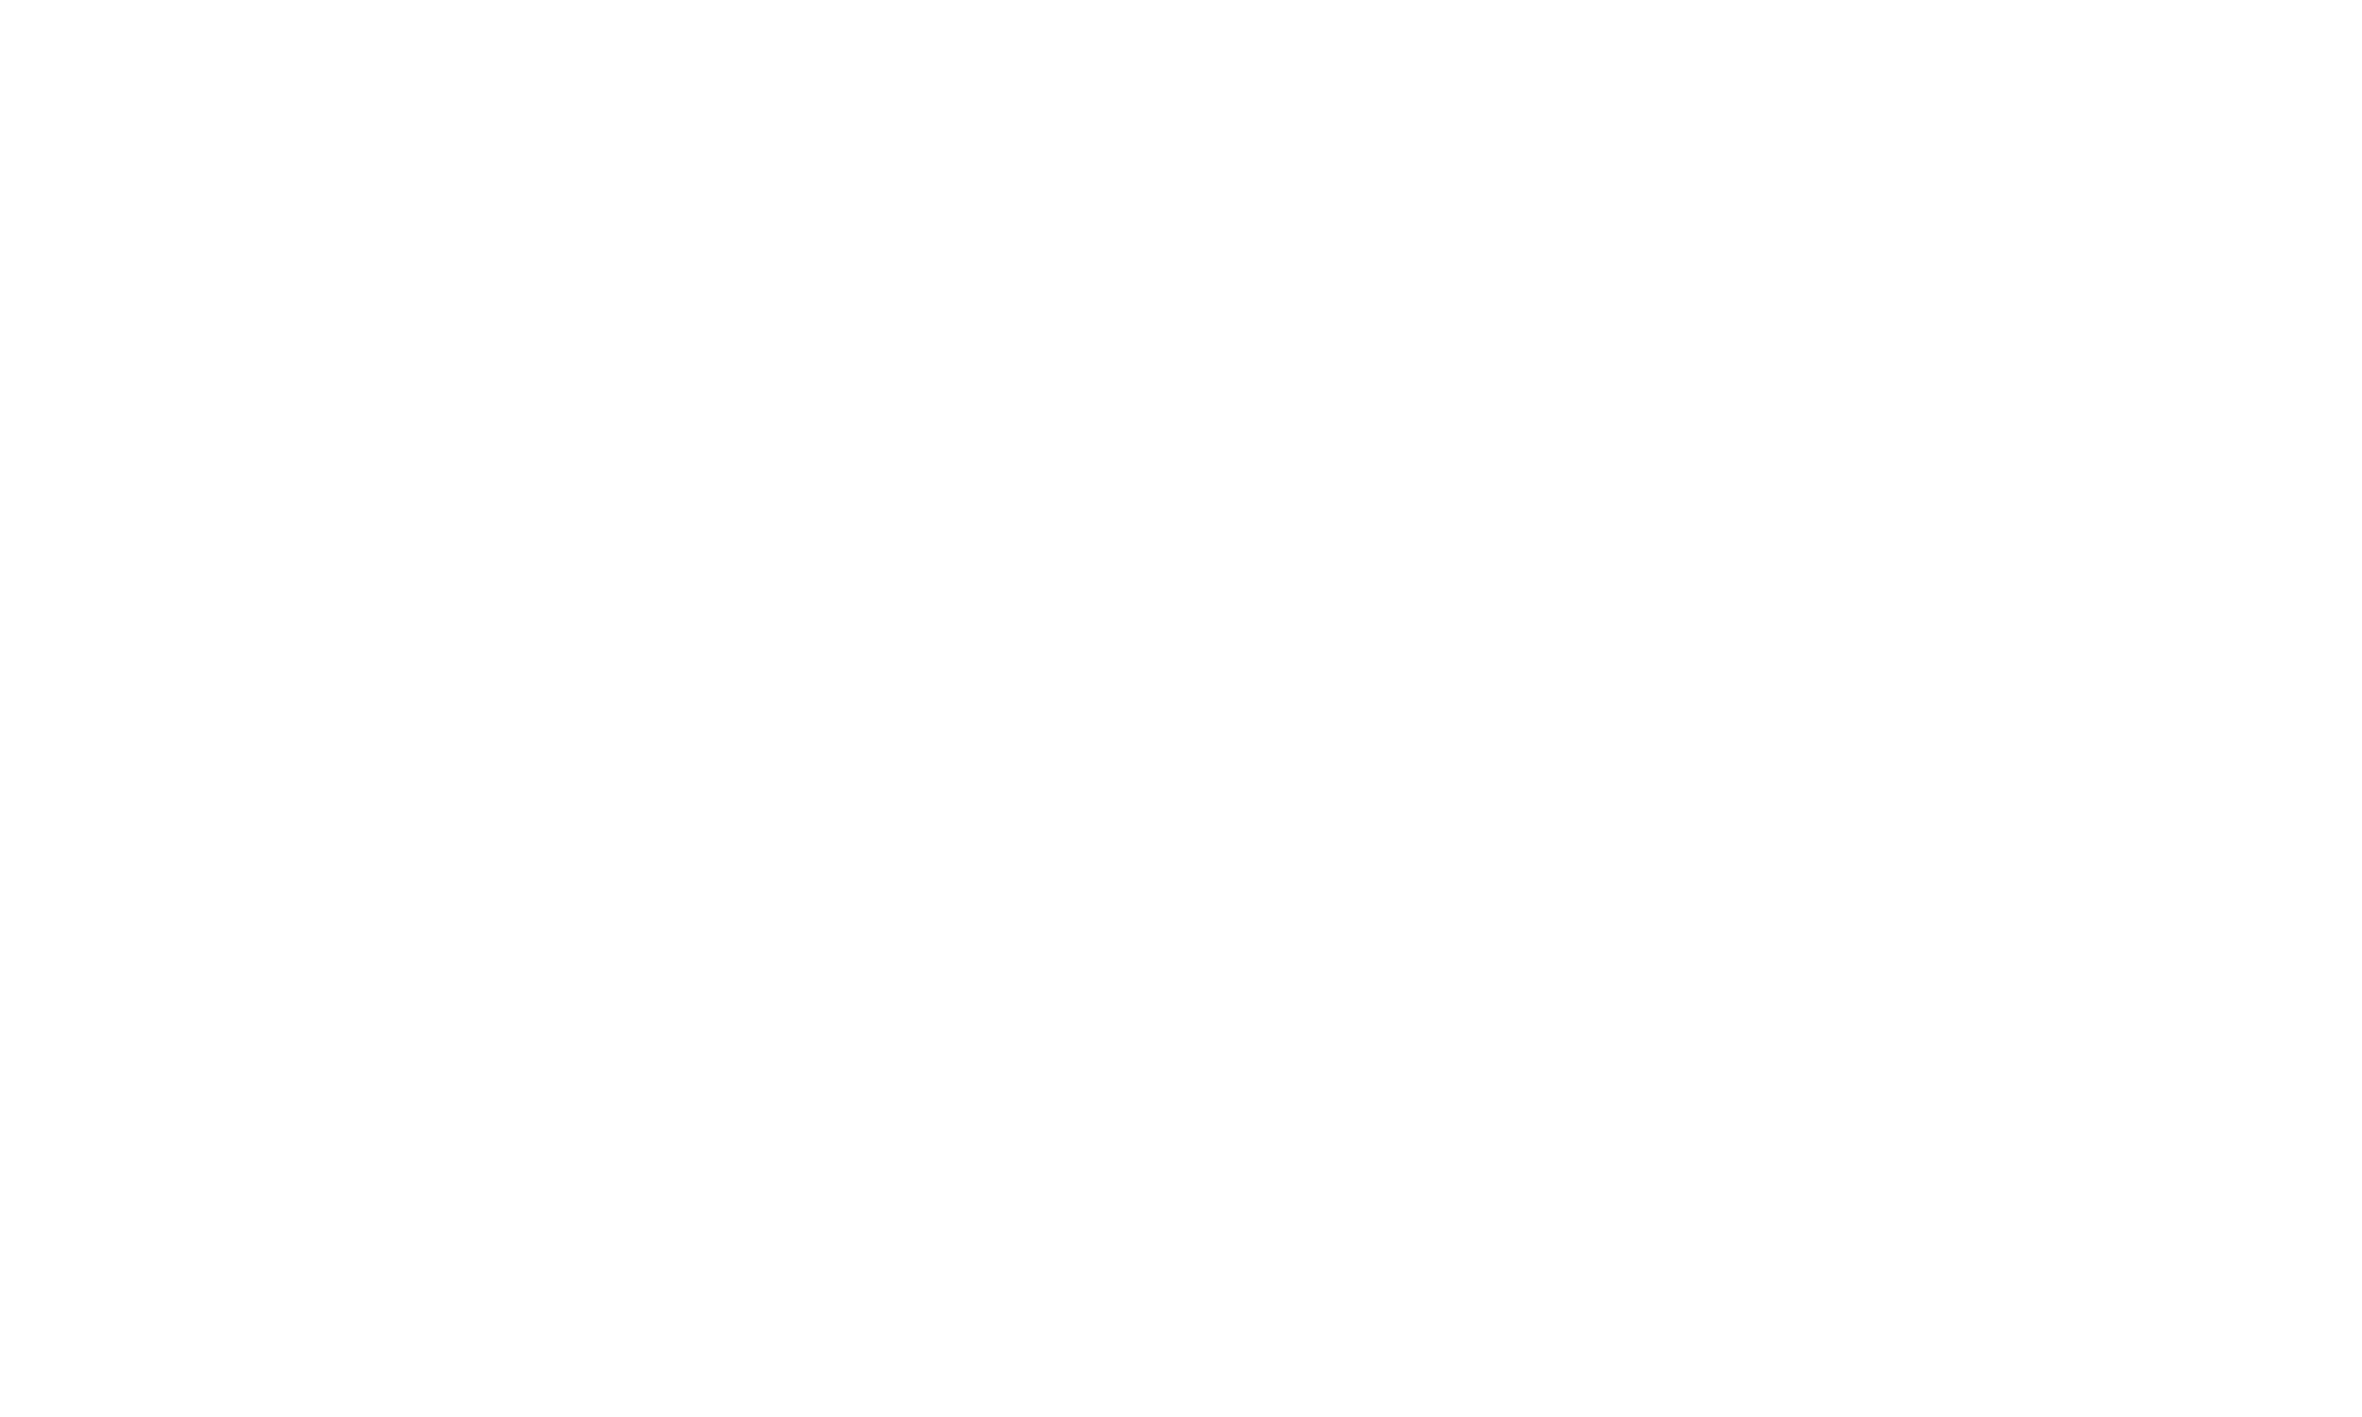 FOD SZ Logo - White